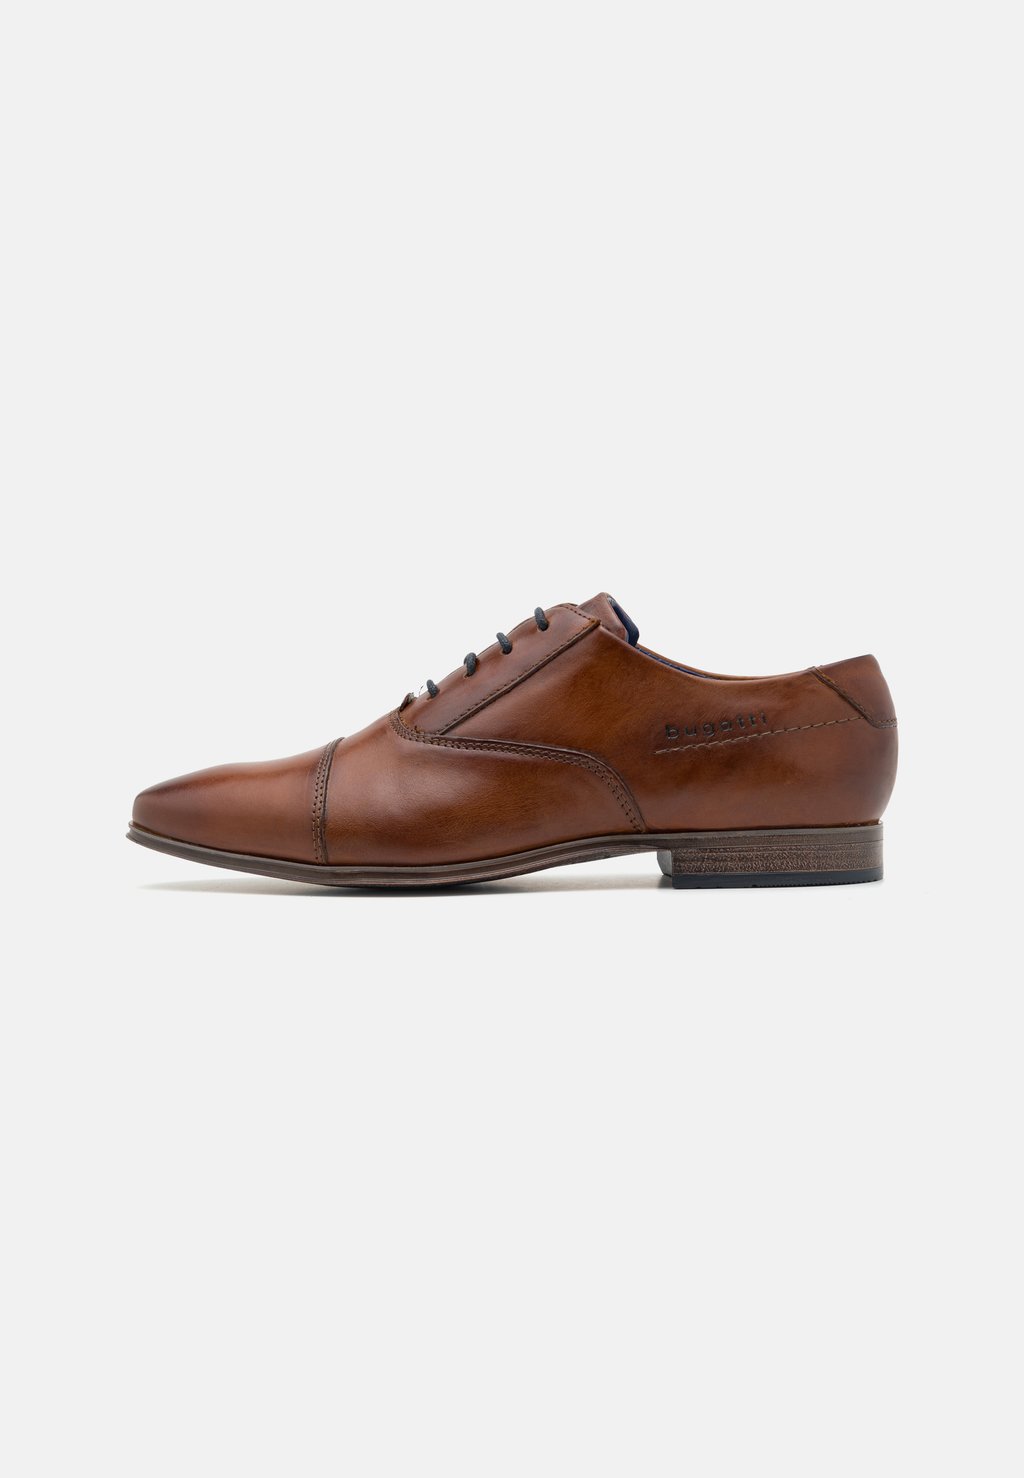 Элегантные туфли на шнуровке Morino bugatti, цвет cognac элегантные туфли на шнуровке faro aldo цвет cognac